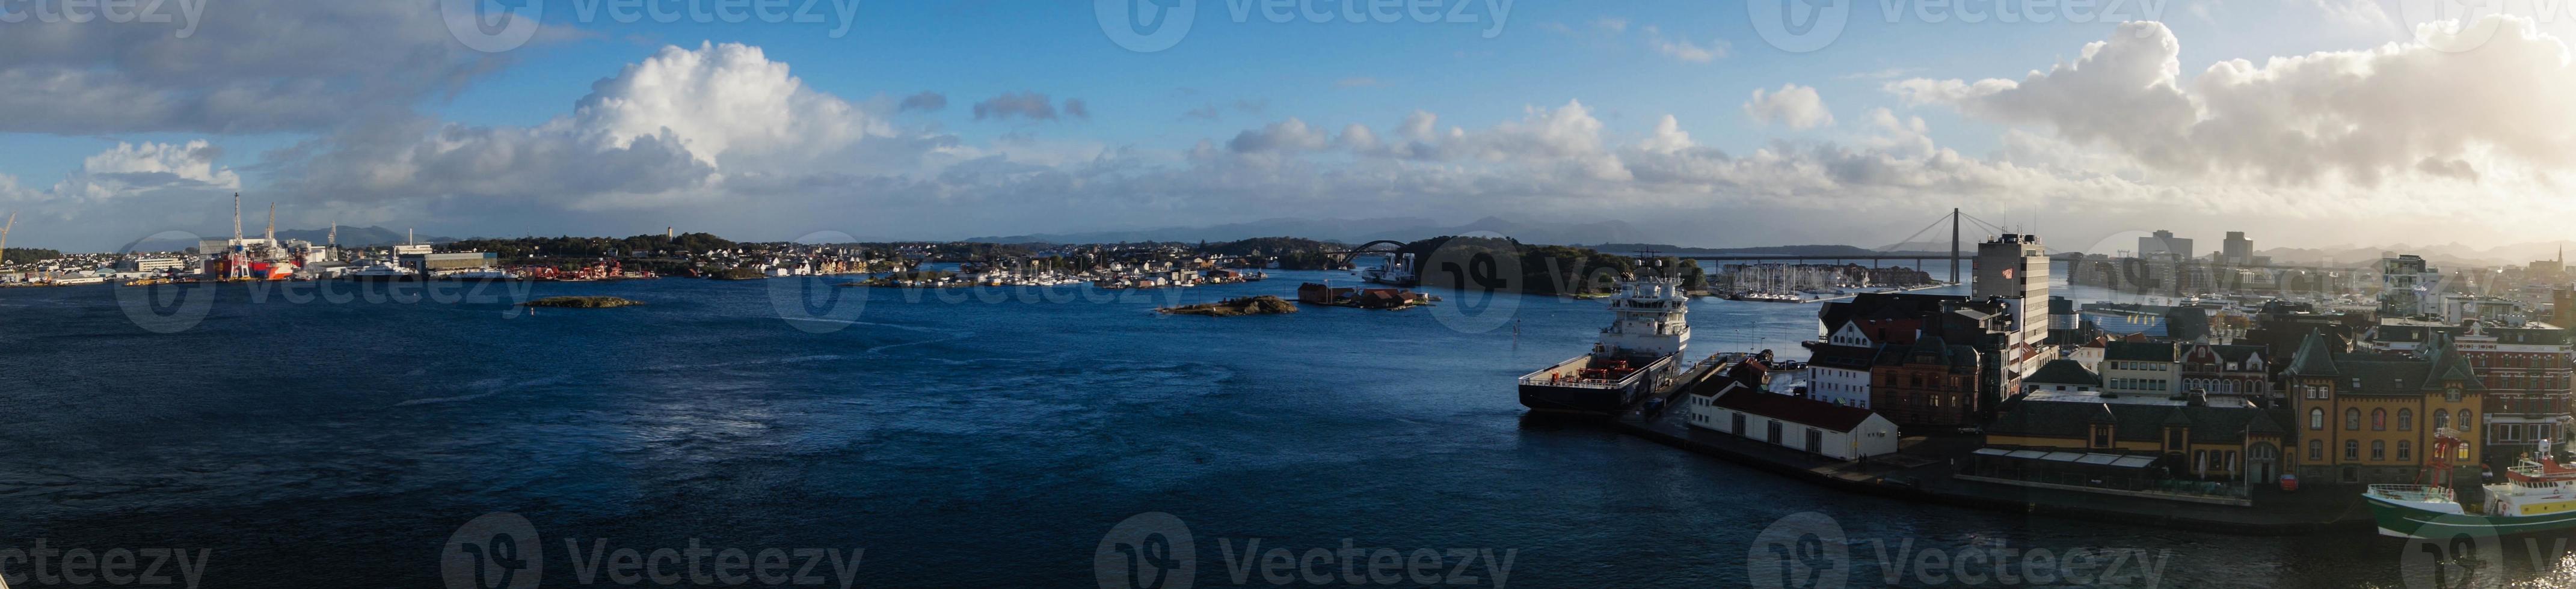 stavanger en noruega desde la perspectiva de la terminal de cruceros foto